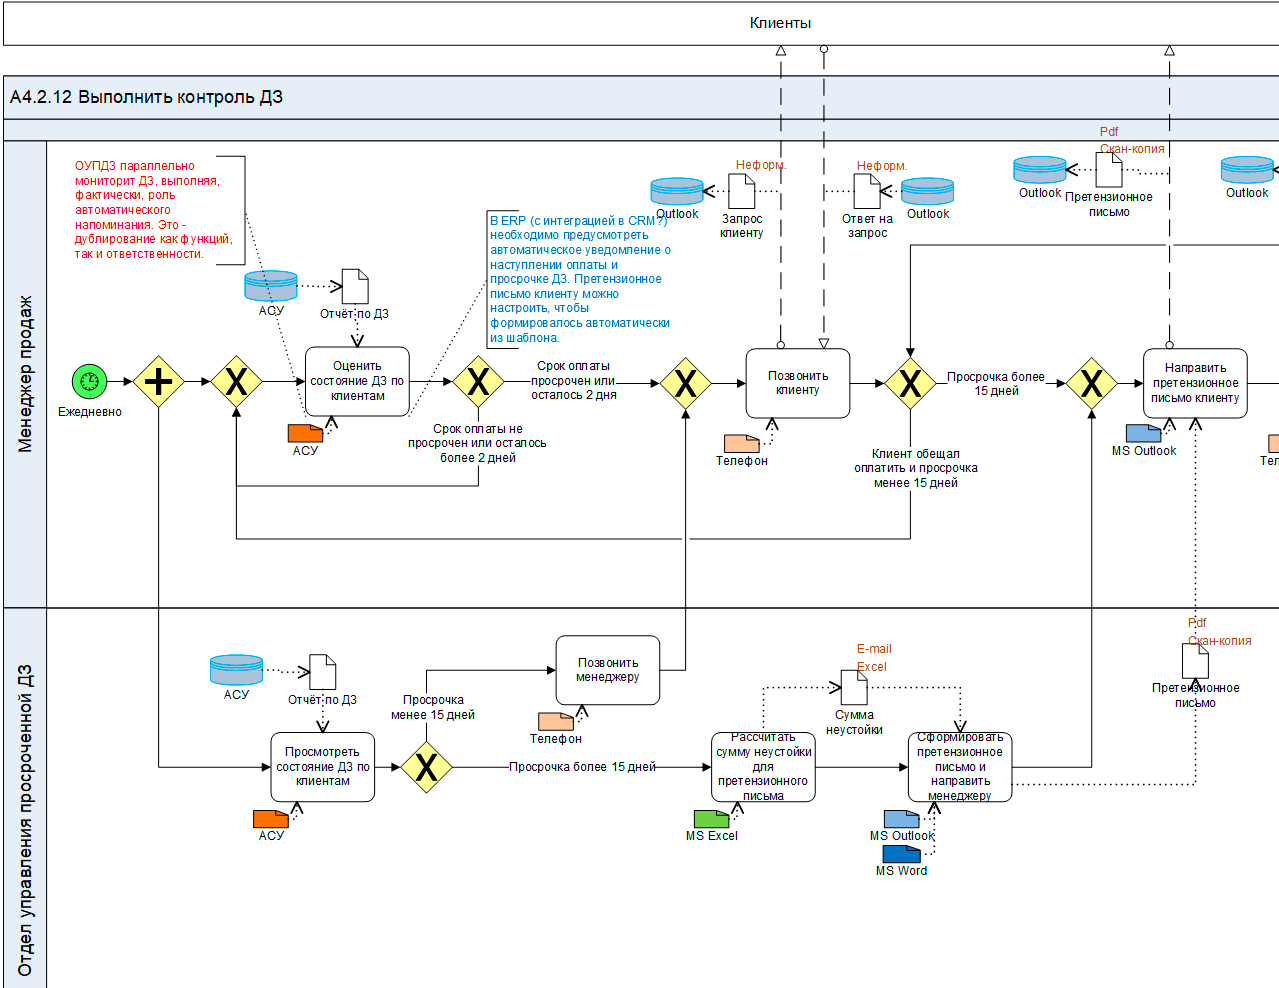 Размещена статья «Методы визуального анализа графической схемы бизнес-процесса в нотации BPMN»